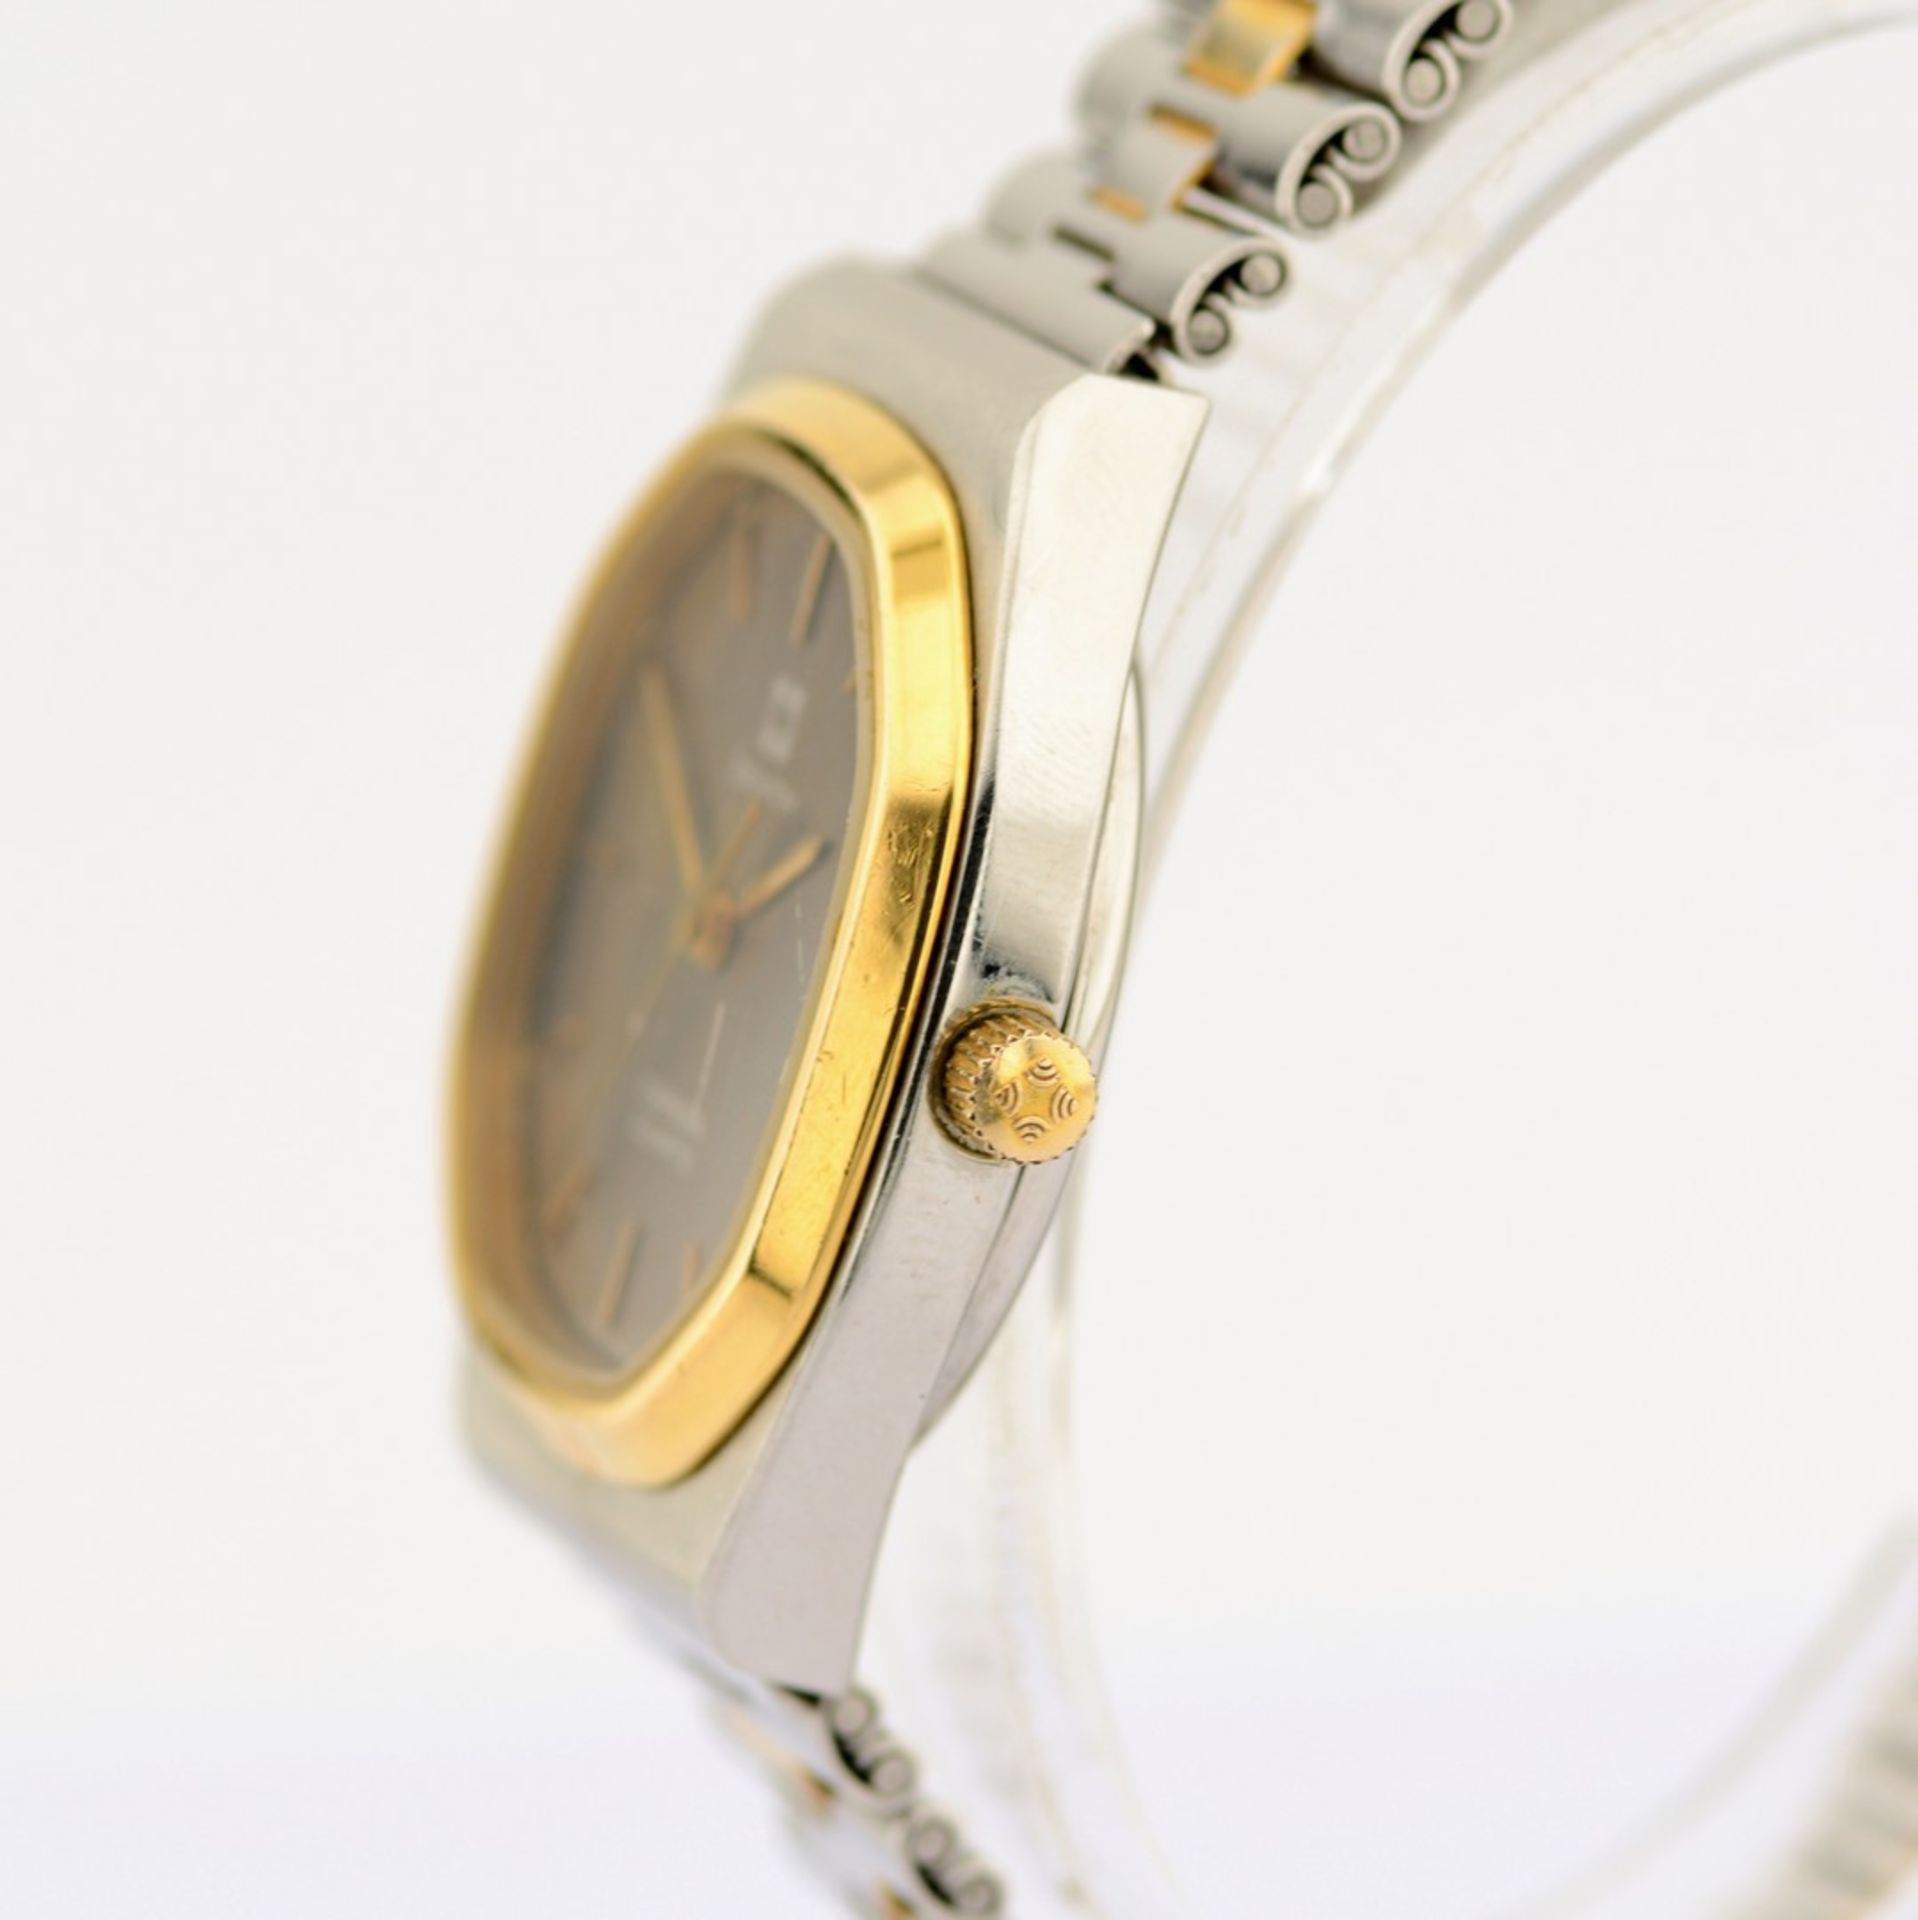 Zenith / Espada - Date - Gentlemen's Steel Wristwatch - Image 7 of 12